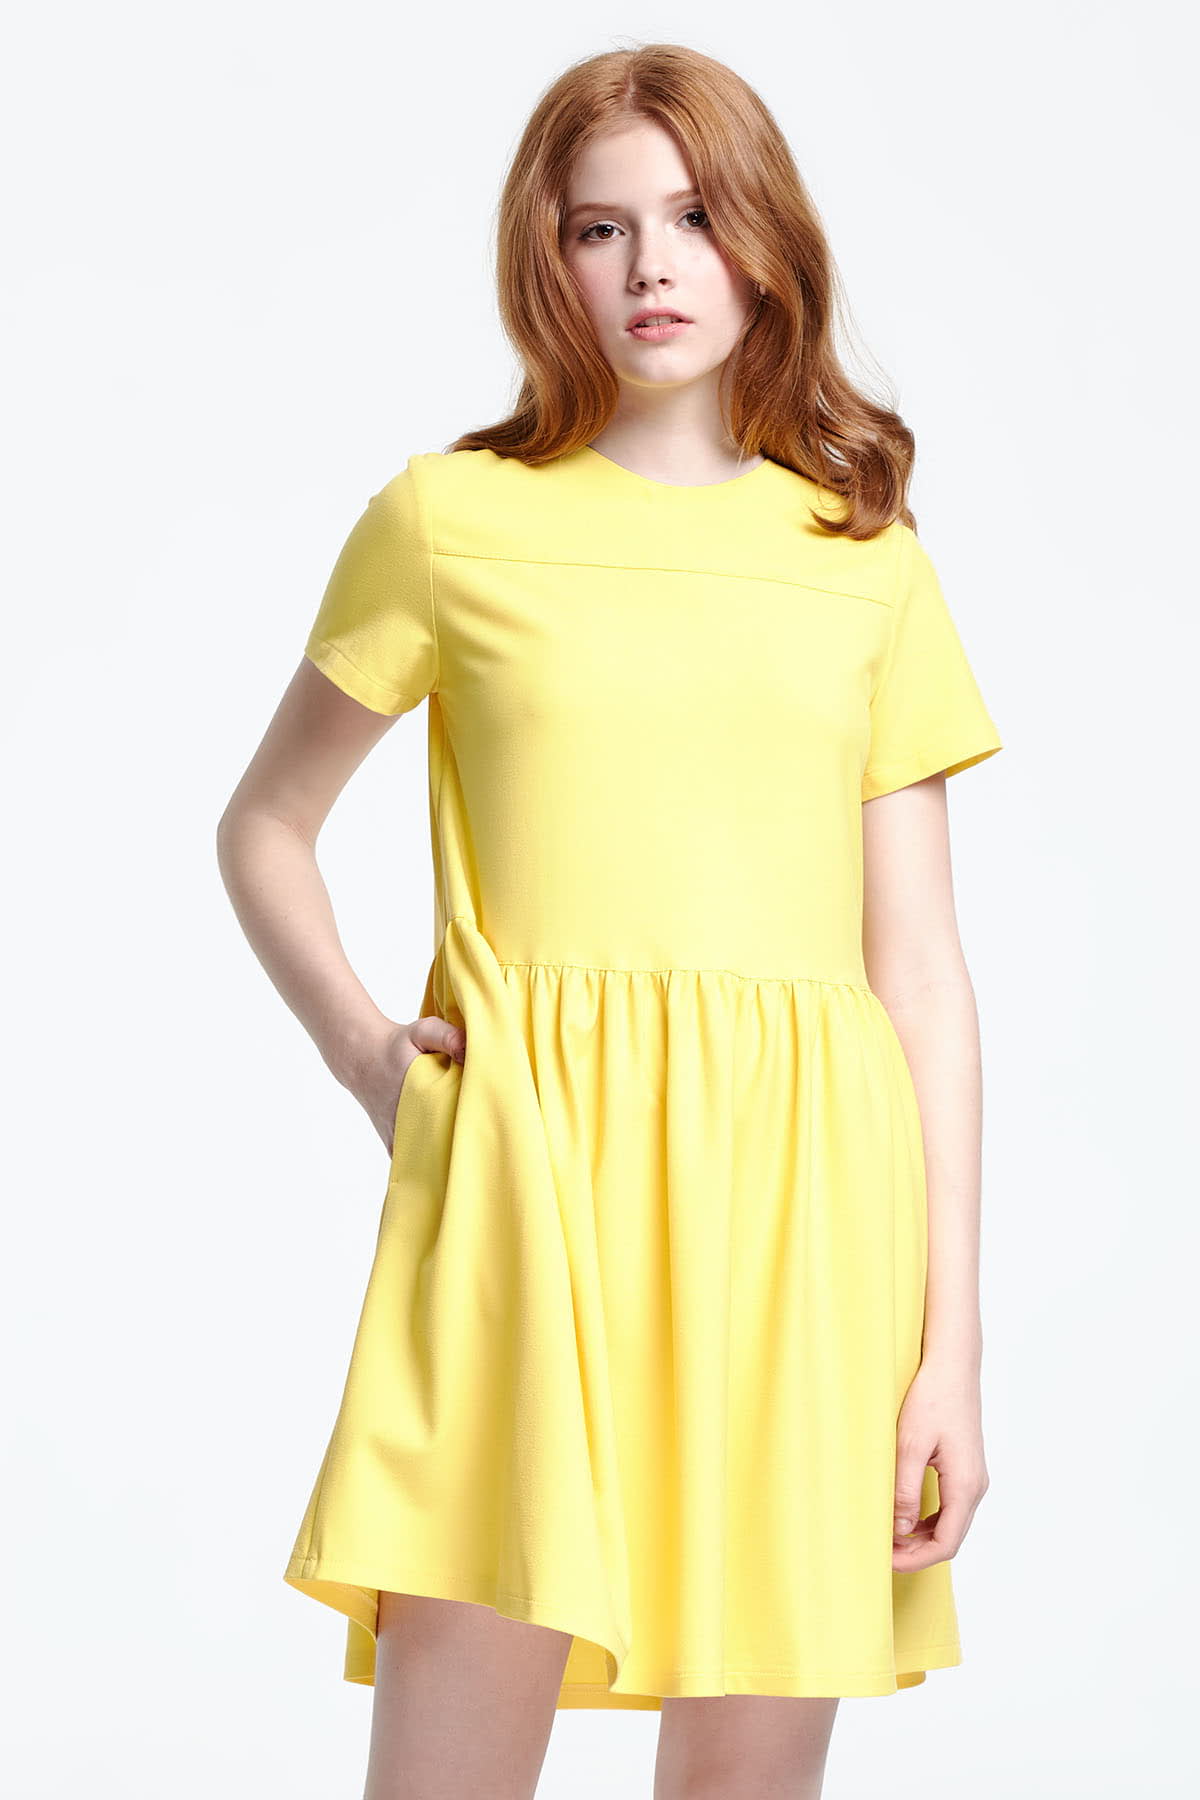 Swing yellow dress , photo 1